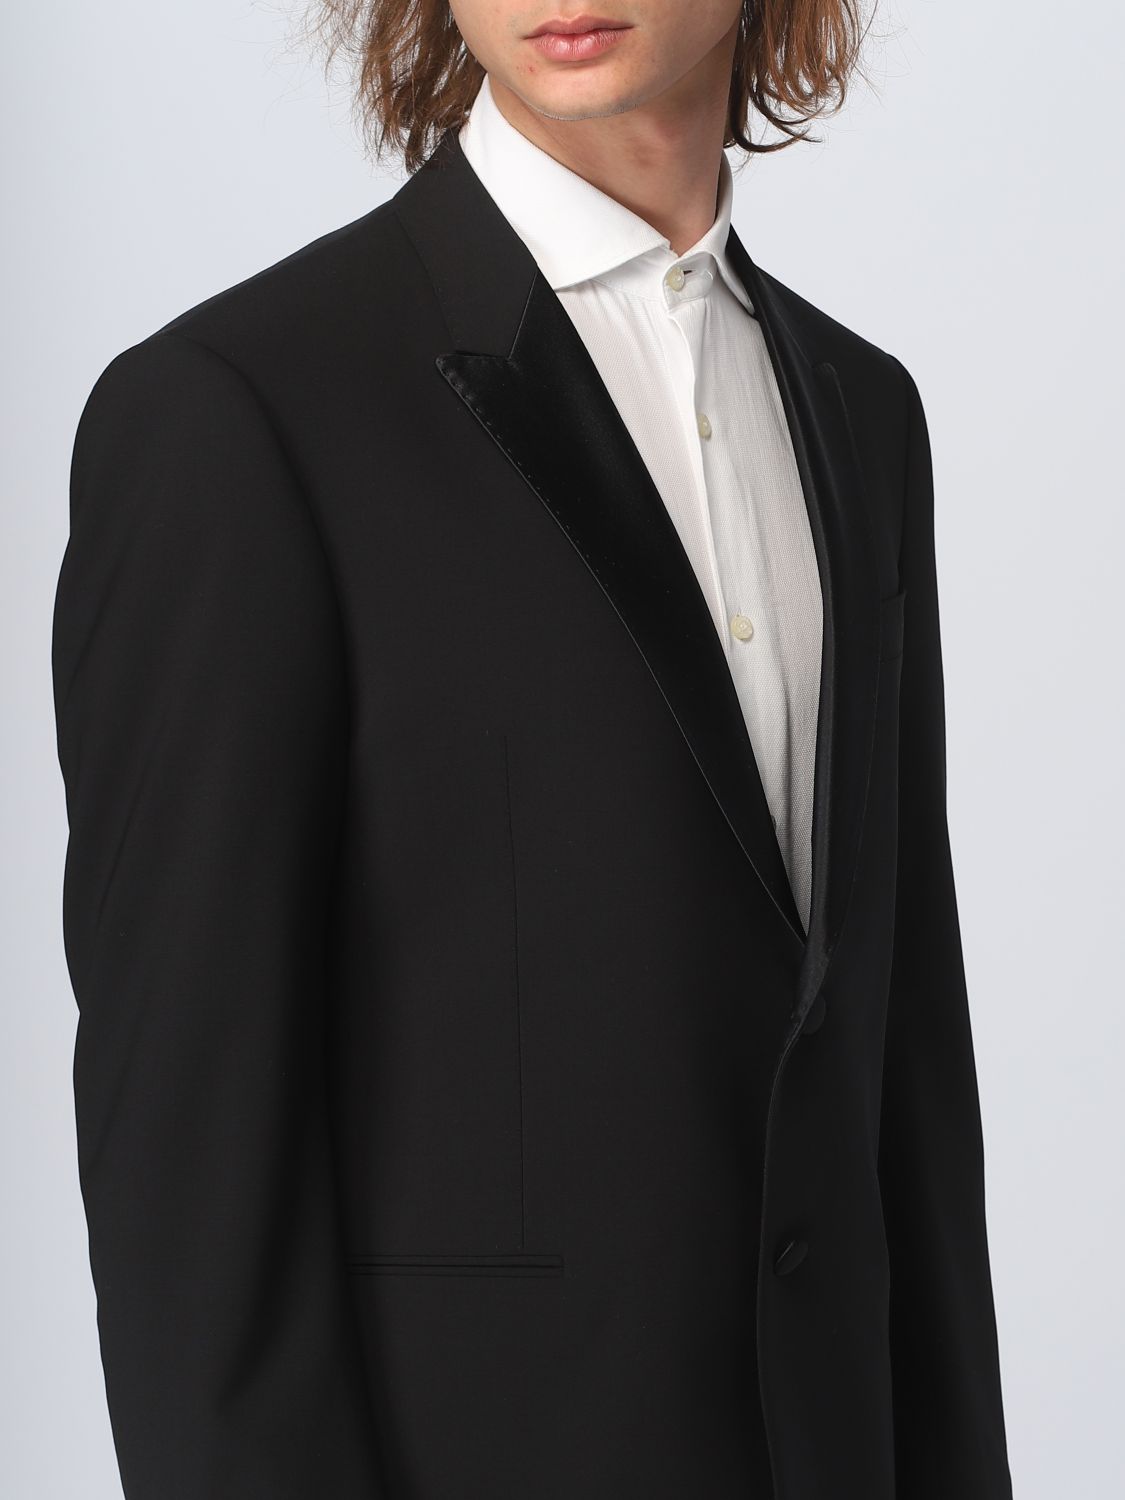 EMPORIO ARMANI: suit for man - Black | Emporio Armani suit 01VMOP0156 ...